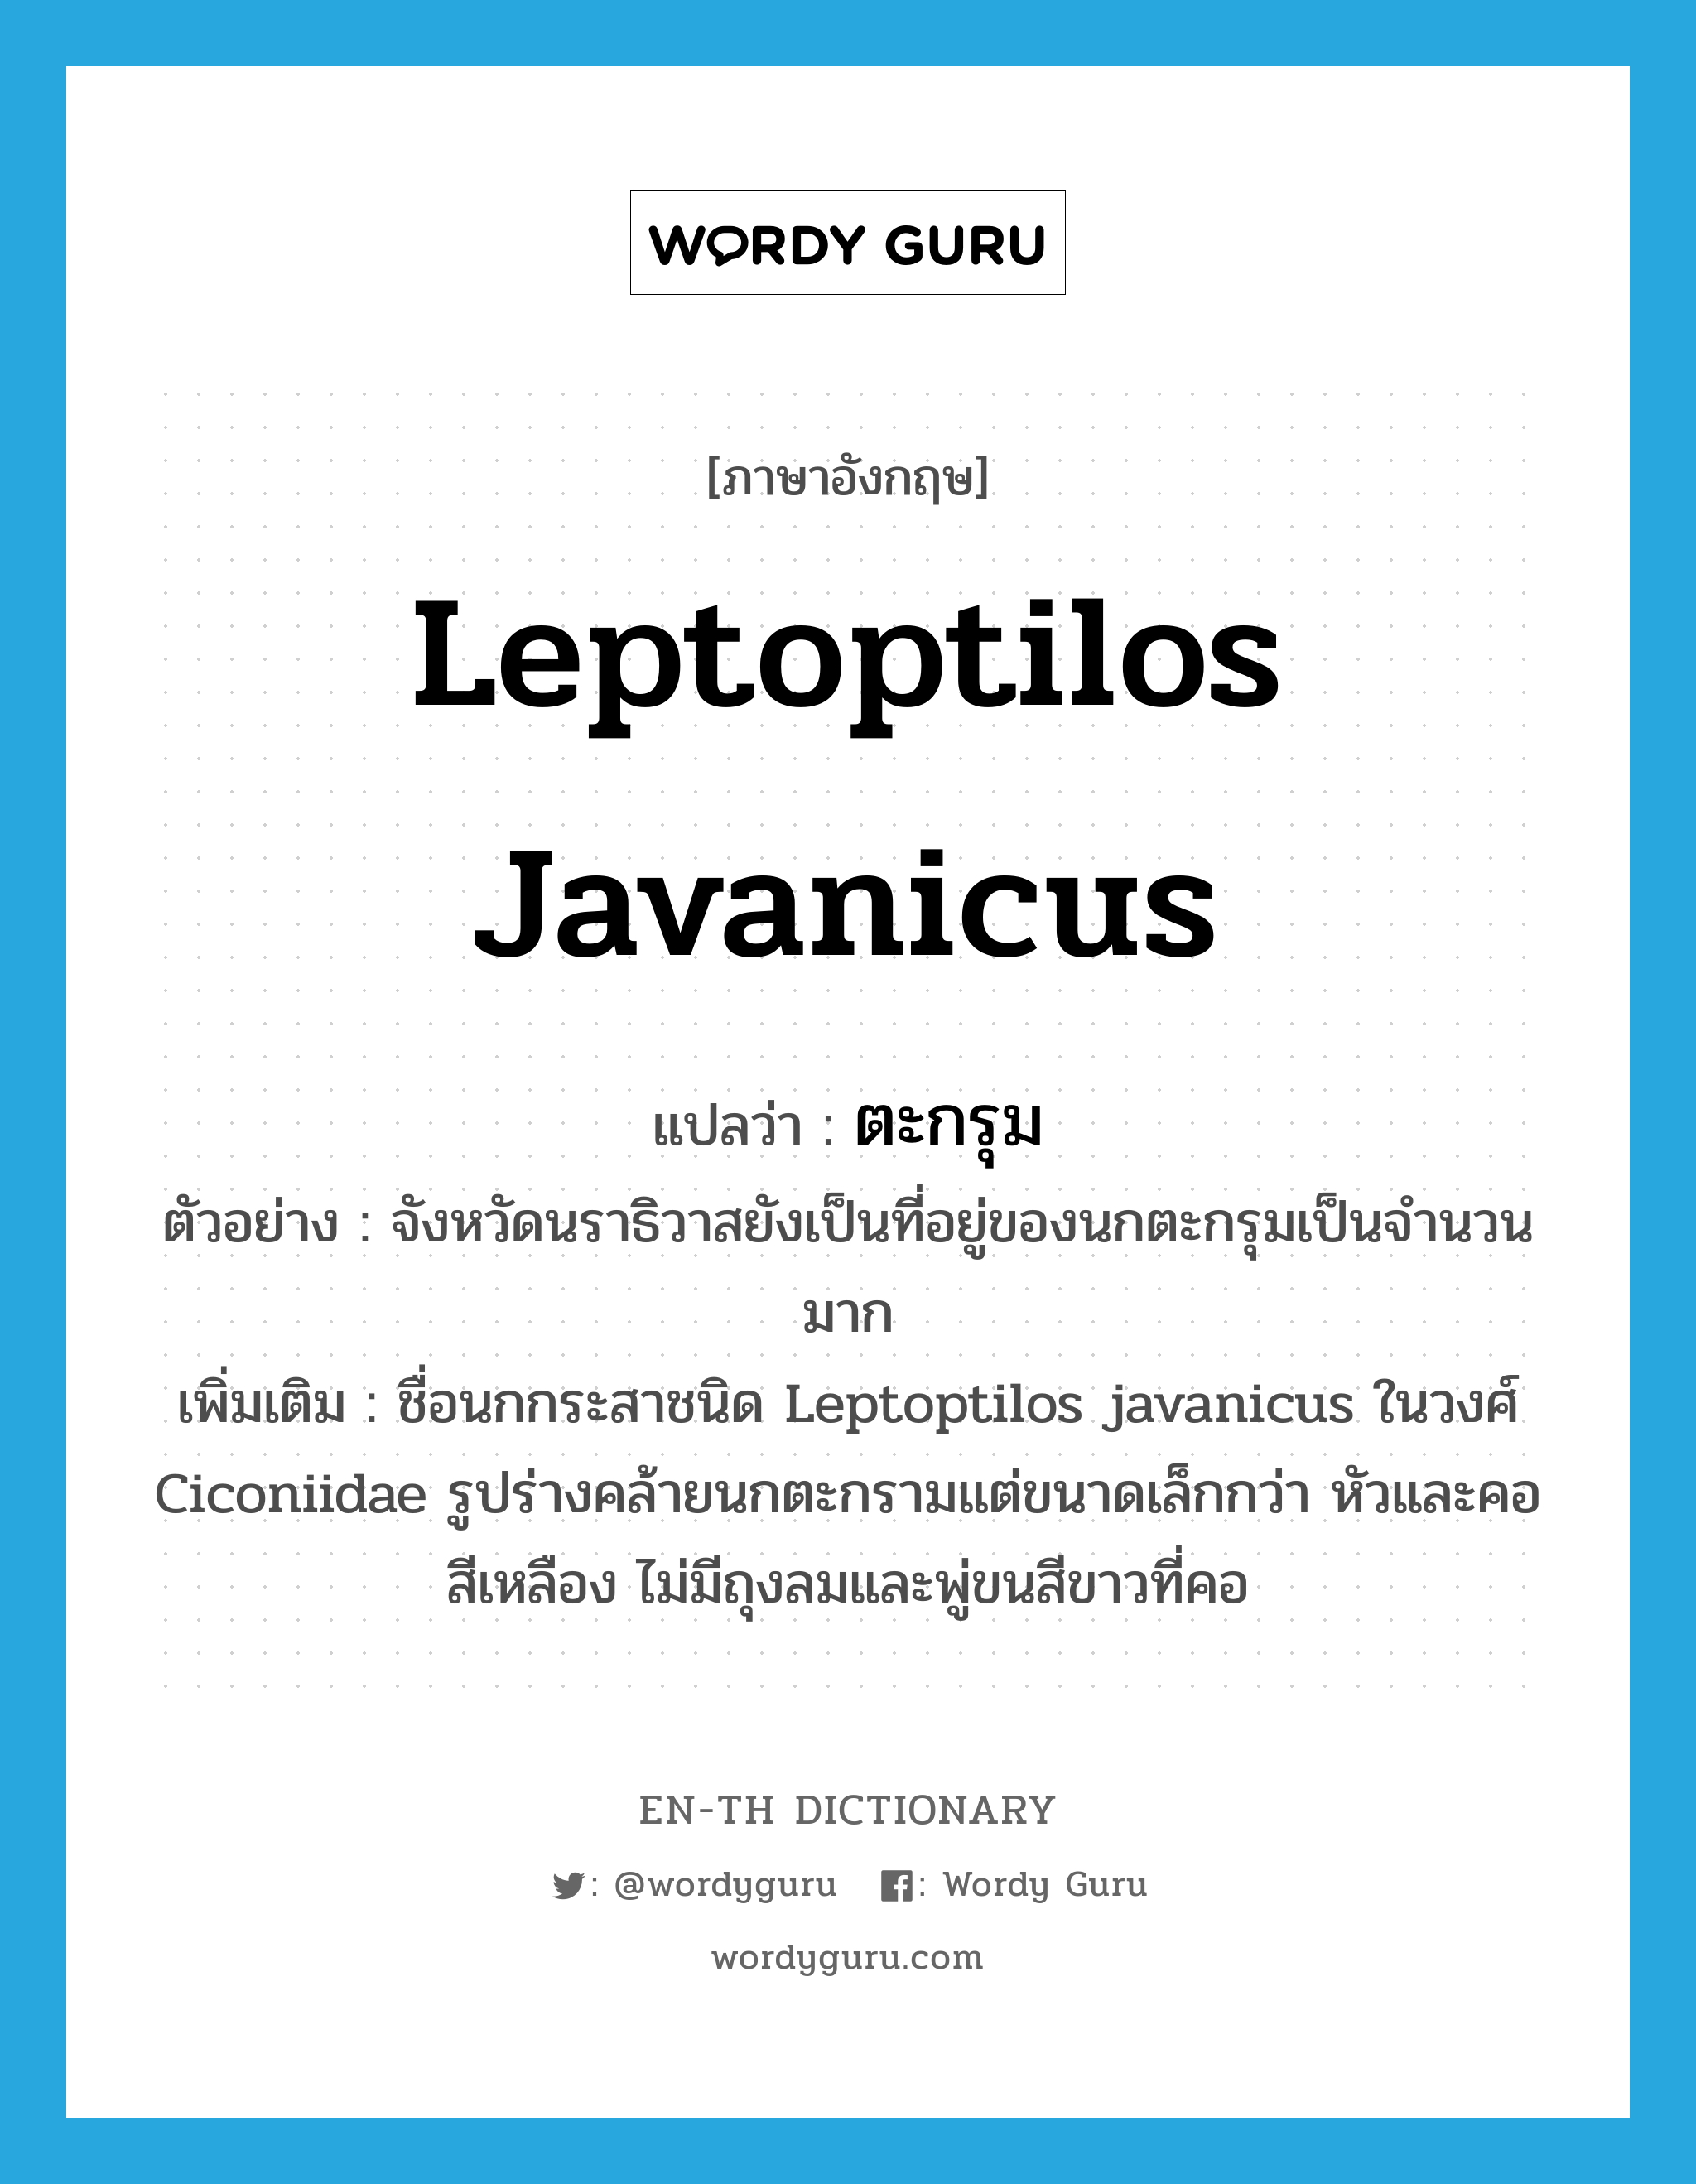 Leptoptilos javanicus แปลว่า?, คำศัพท์ภาษาอังกฤษ Leptoptilos javanicus แปลว่า ตะกรุม ประเภท N ตัวอย่าง จังหวัดนราธิวาสยังเป็นที่อยู่ของนกตะกรุมเป็นจำนวนมาก เพิ่มเติม ชื่อนกกระสาชนิด Leptoptilos javanicus ในวงศ์ Ciconiidae รูปร่างคล้ายนกตะกรามแต่ขนาดเล็กกว่า หัวและคอสีเหลือง ไม่มีถุงลมและพู่ขนสีขาวที่คอ หมวด N